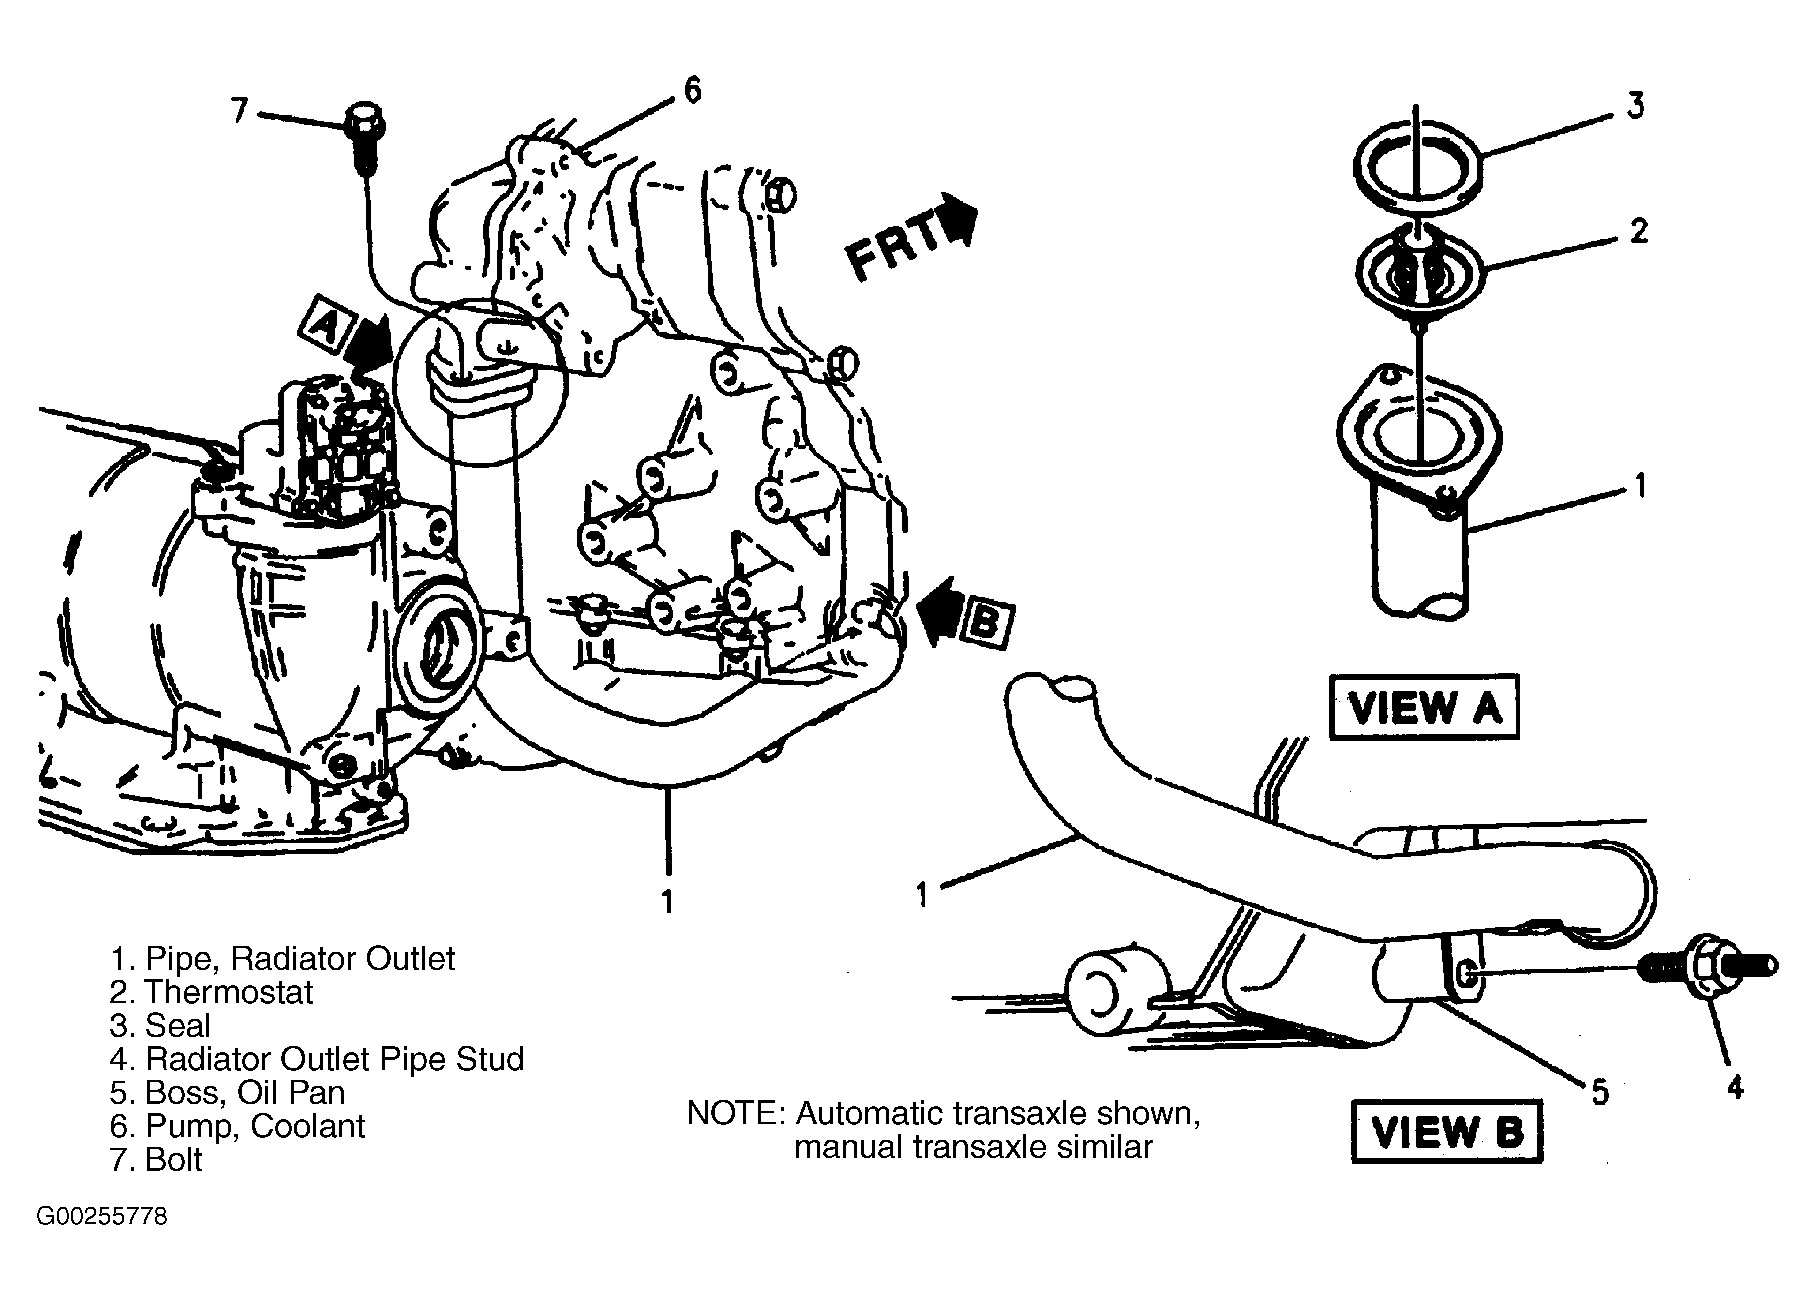 2000 Pontiac Grand Prix Engine Diagram Pontiac Engine Diagrams Wiring Diagram Datasource Of 2000 Pontiac Grand Prix Engine Diagram